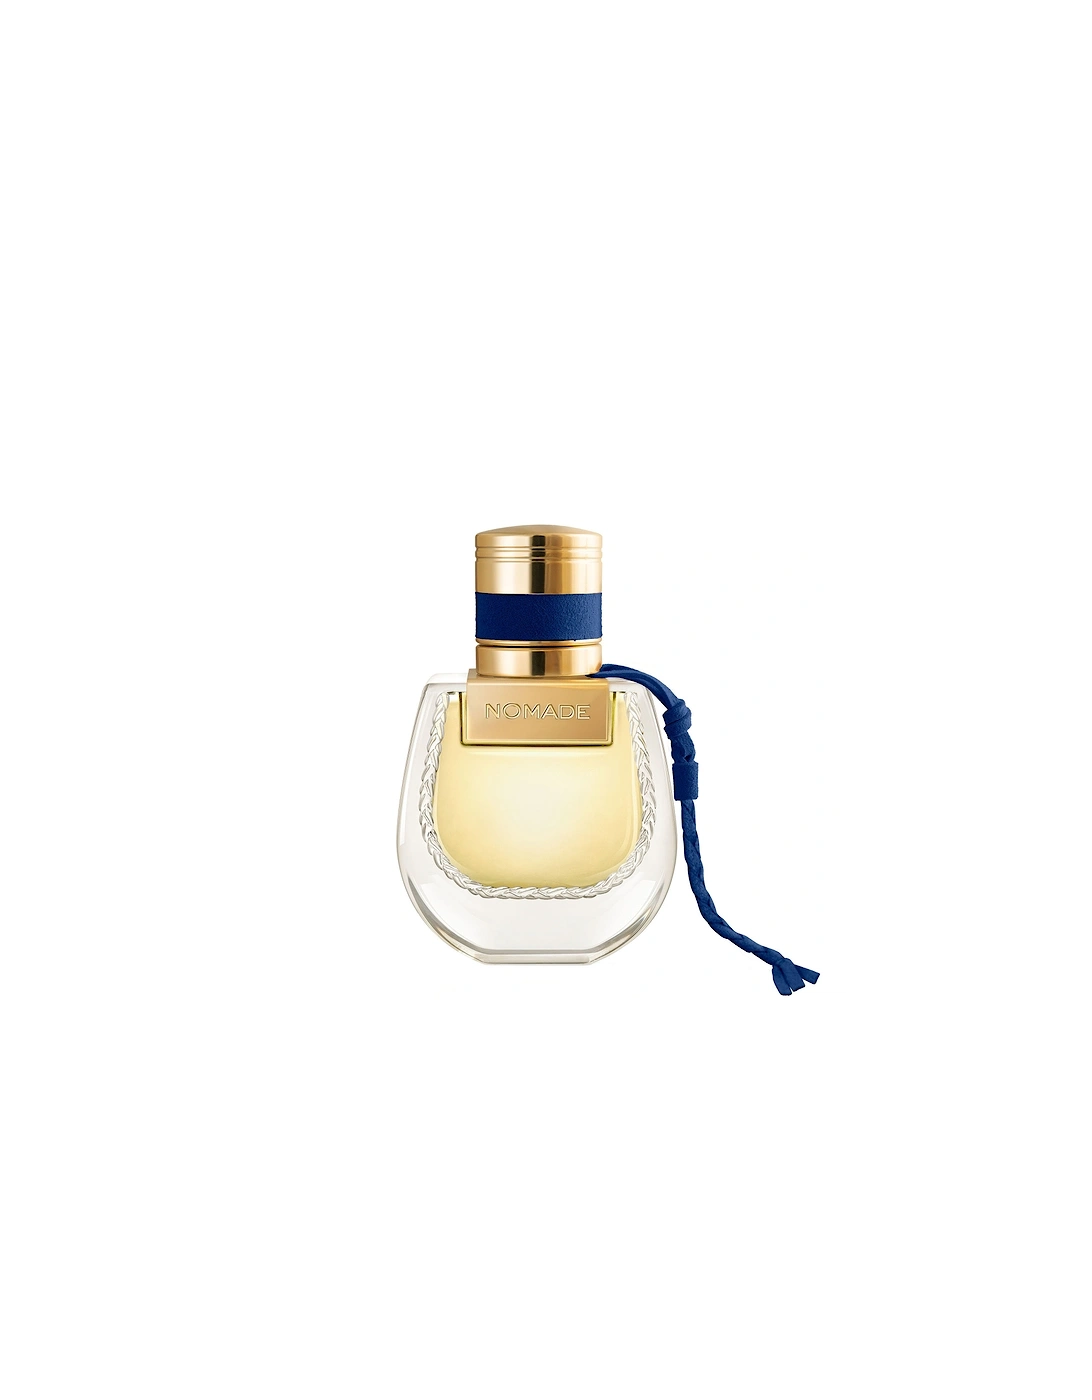 Nomade Nuit d’Egypte Eau de Parfum for Women 30ml, 2 of 1